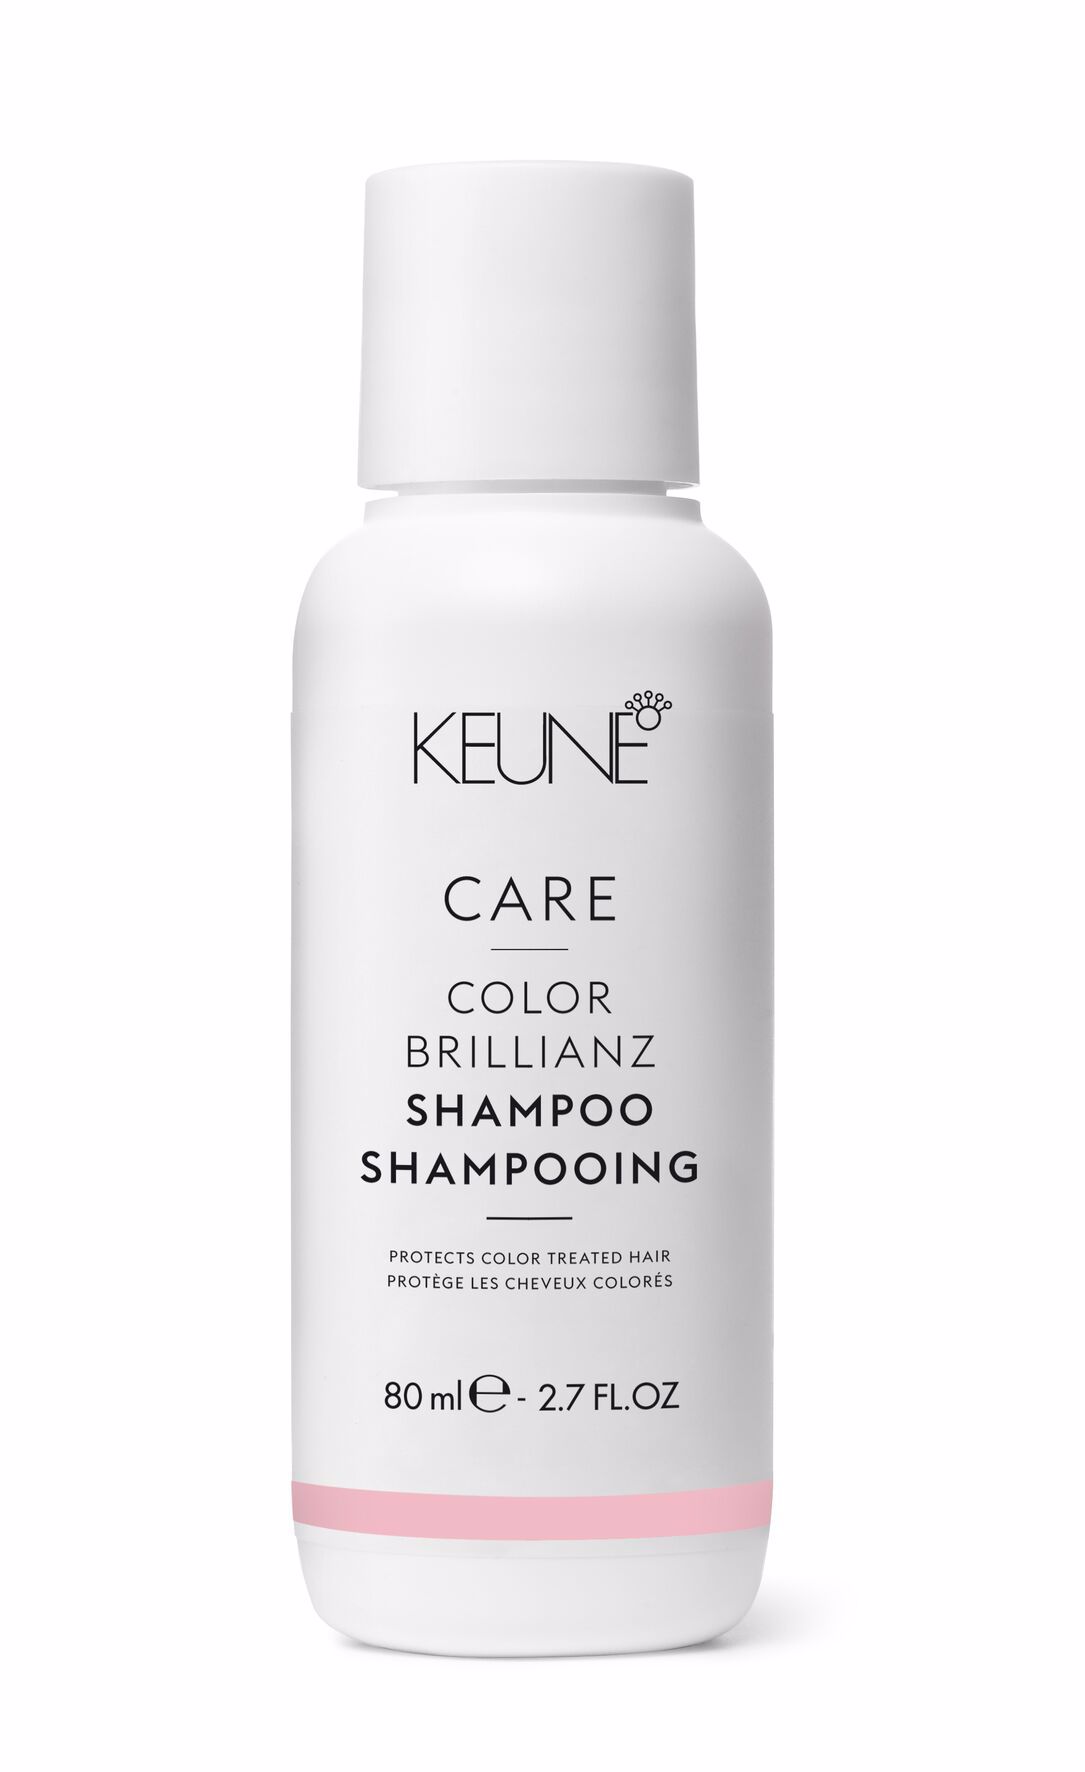 Color Brilianz Shampoo, entwickelt für coloriertes Haar, verleiht langanhaltende Farbbrillanz. Entdecken Sie weitere Produkte für gefärbtes Haar auf keune.ch